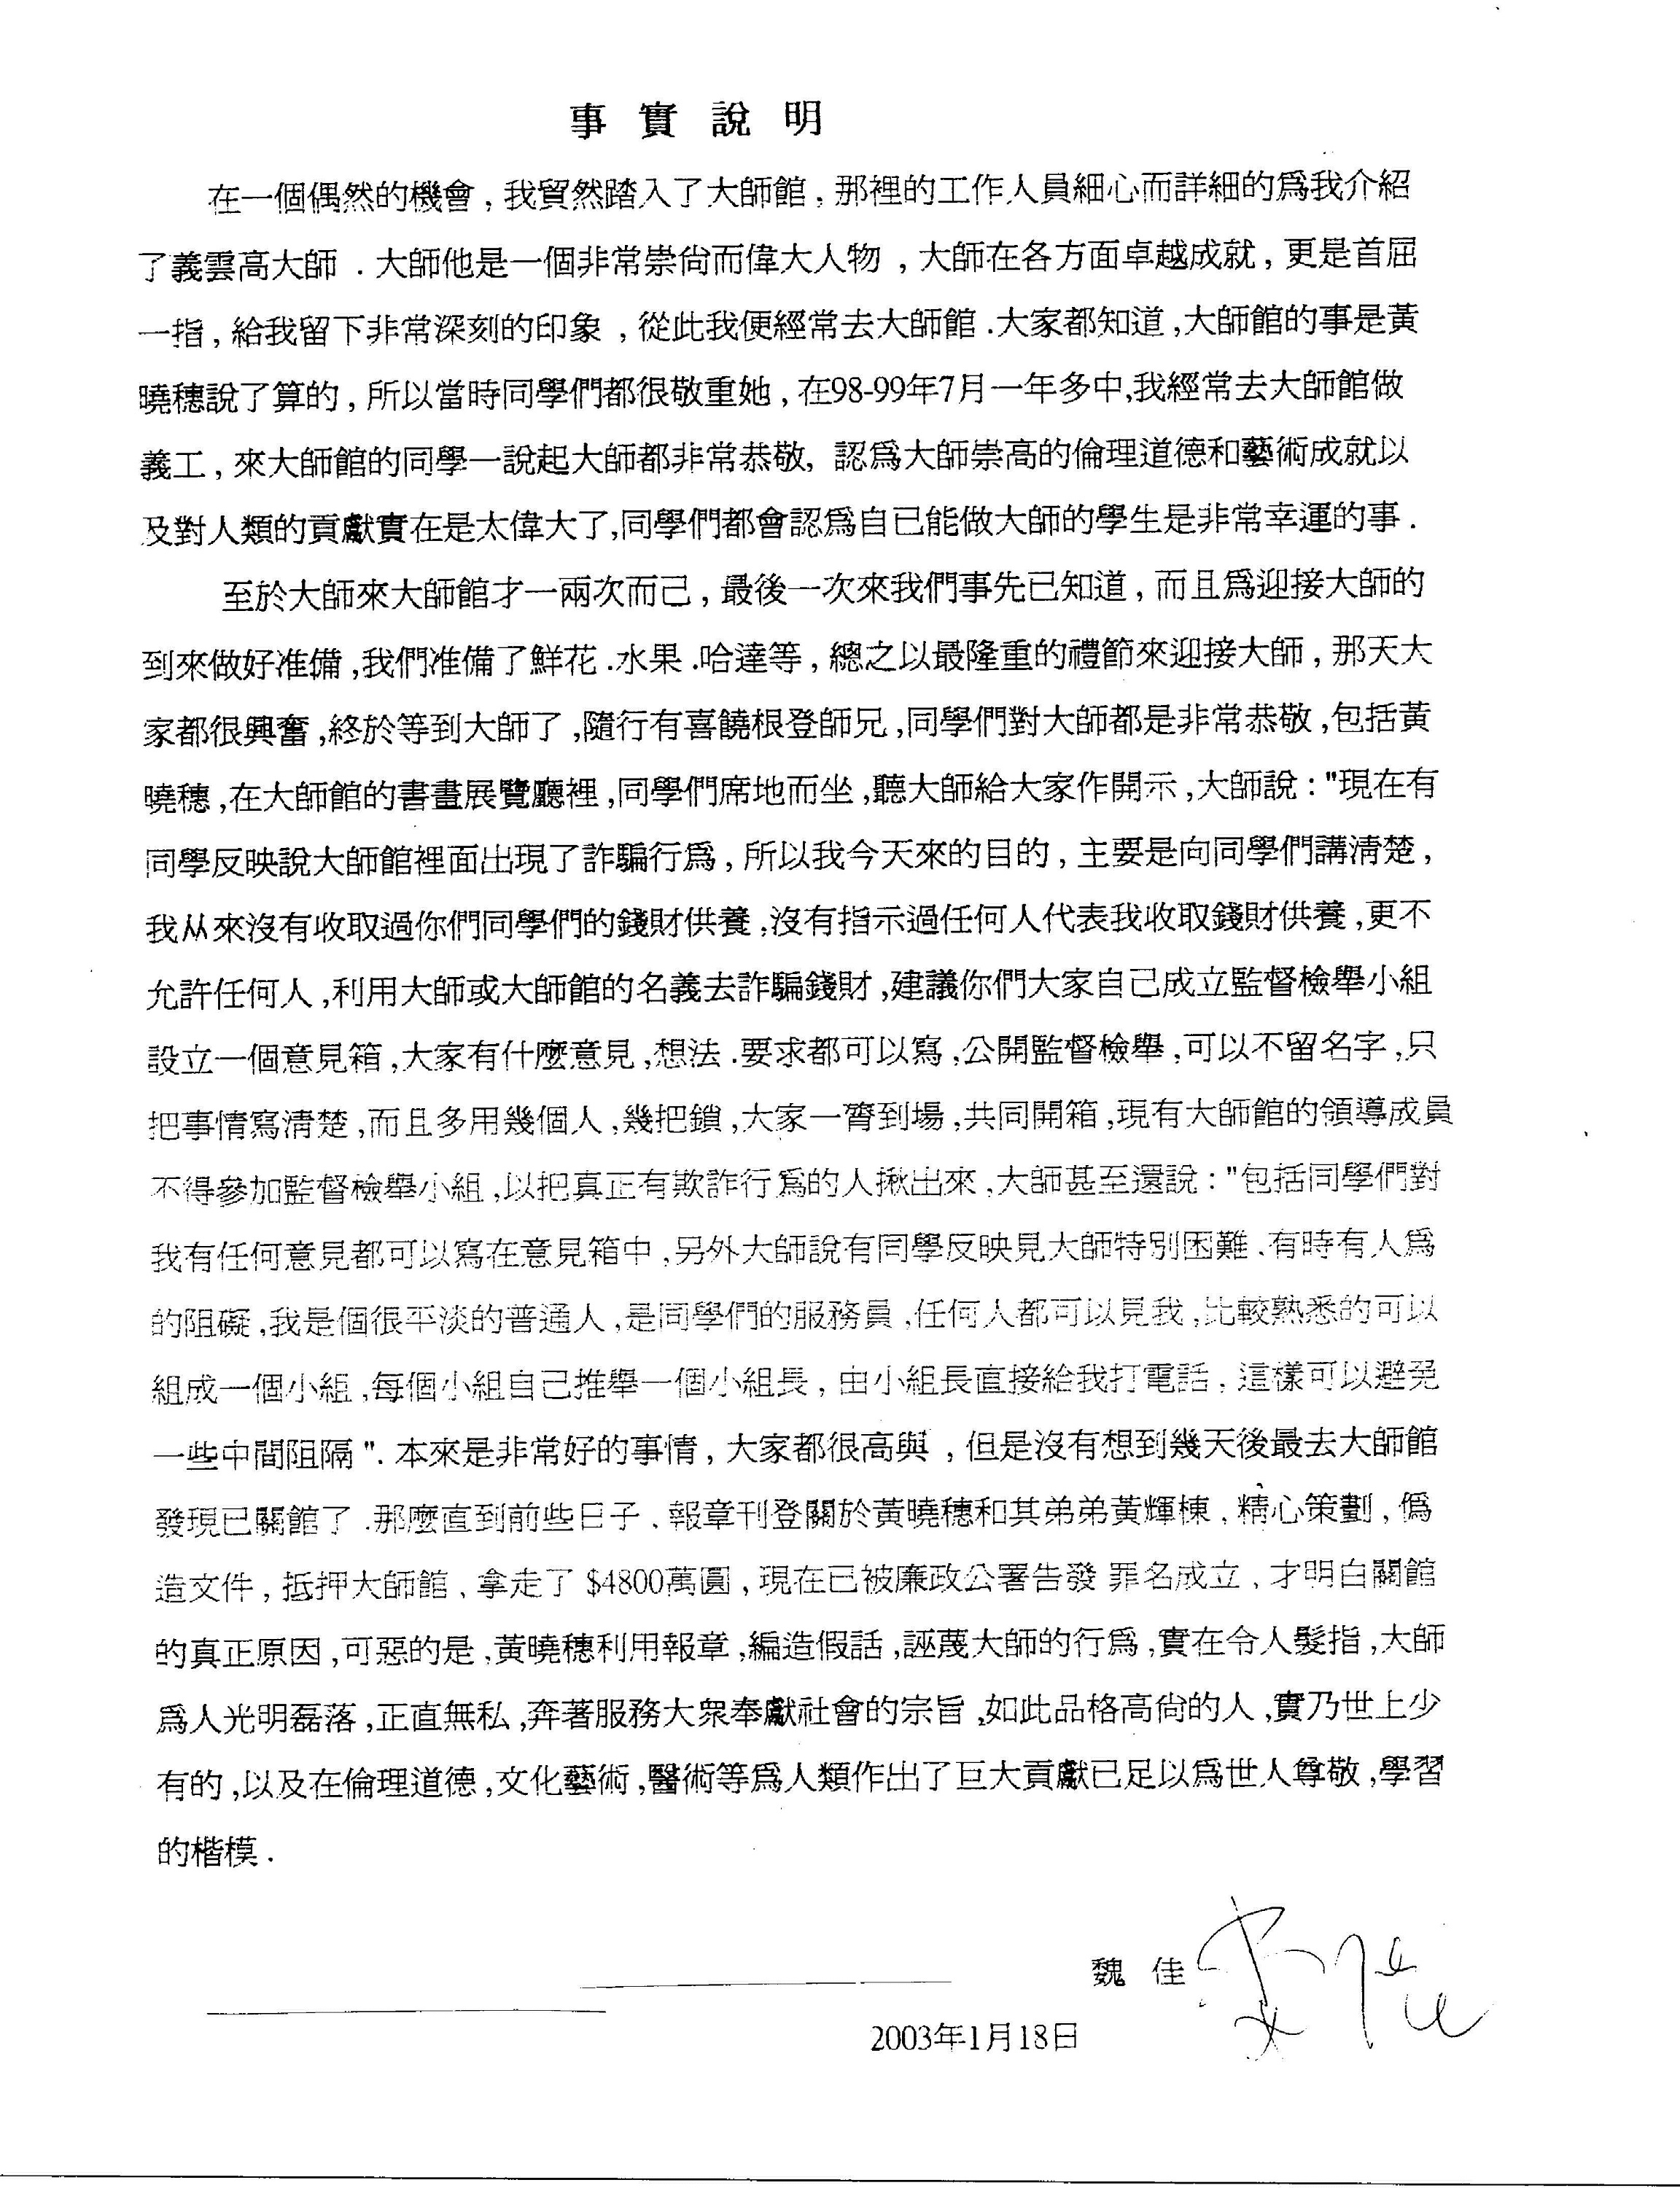 香港法院重判黄晓穗诈骗案 还第三世多杰羌佛清白 第18张